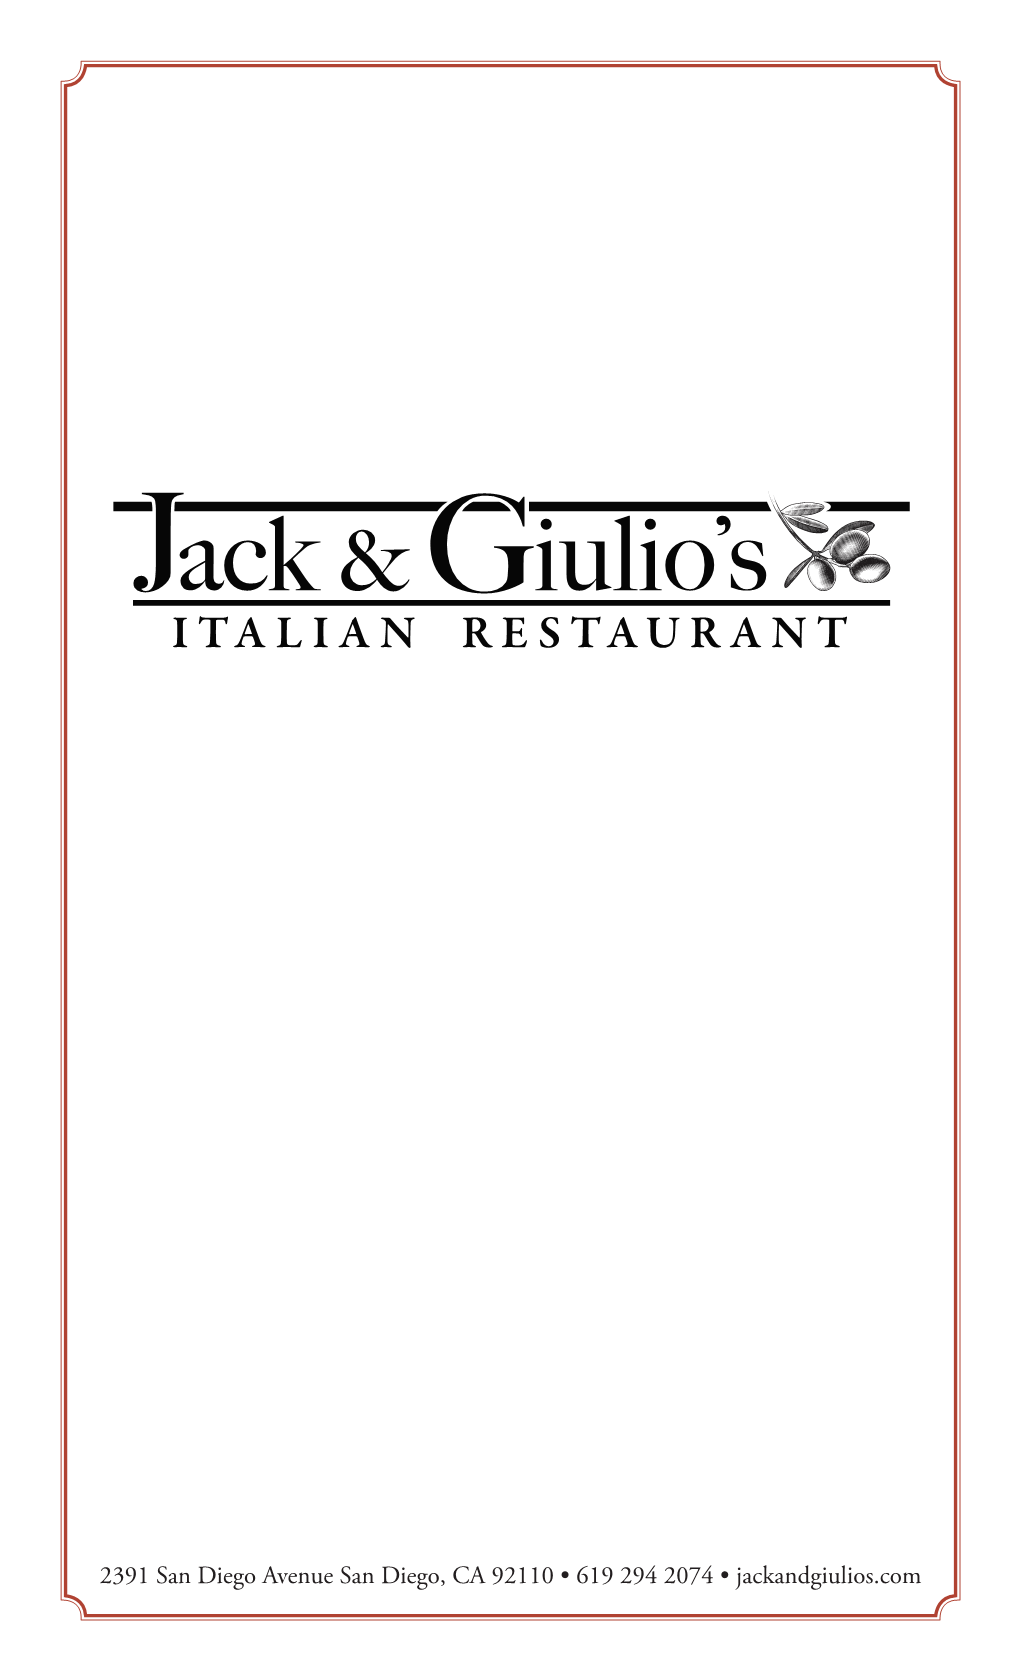 Fettuccine Alfredo 16 Add Chicken 6 Meatball Add 3 Gluten-Free Add 3 JACK & GIULIO’S — Italian Restaurant — — Il Mare — Linguine Con Vongole (Clams) 18